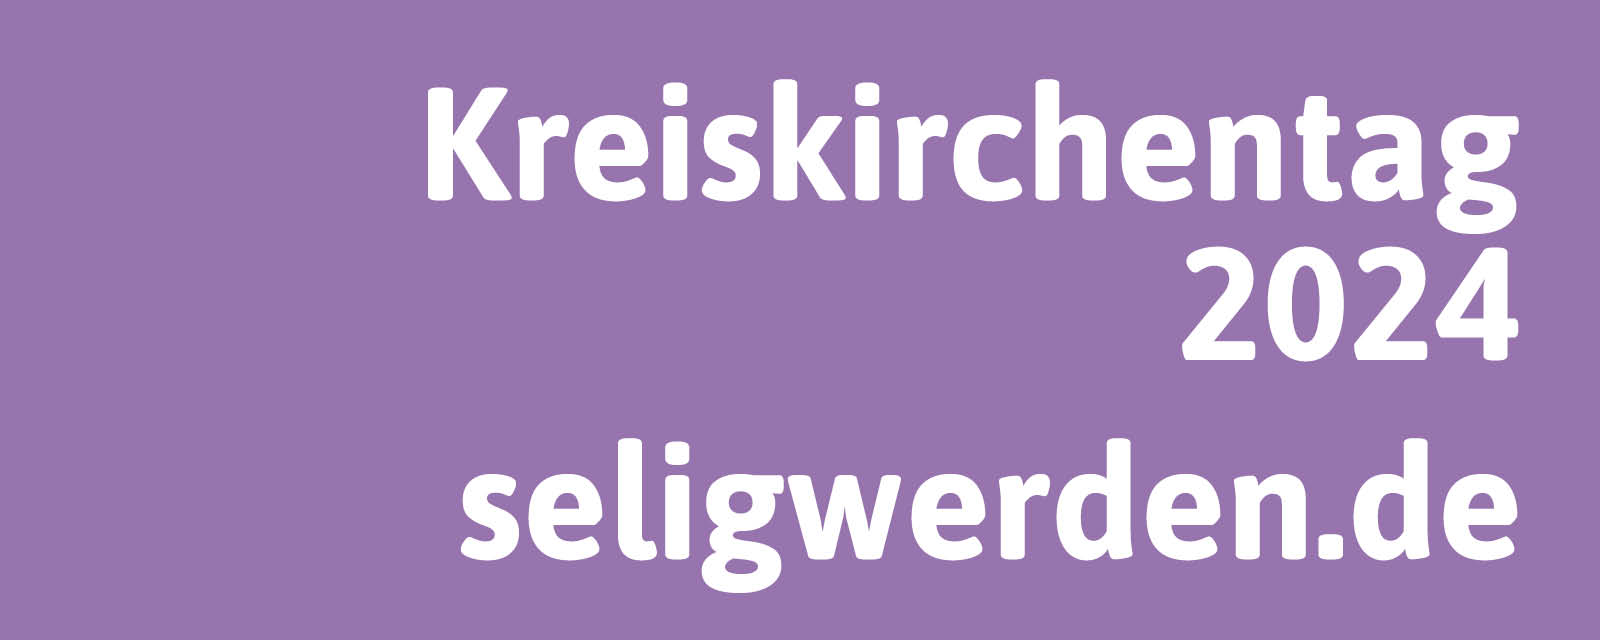 Kreiskirchentag 2024